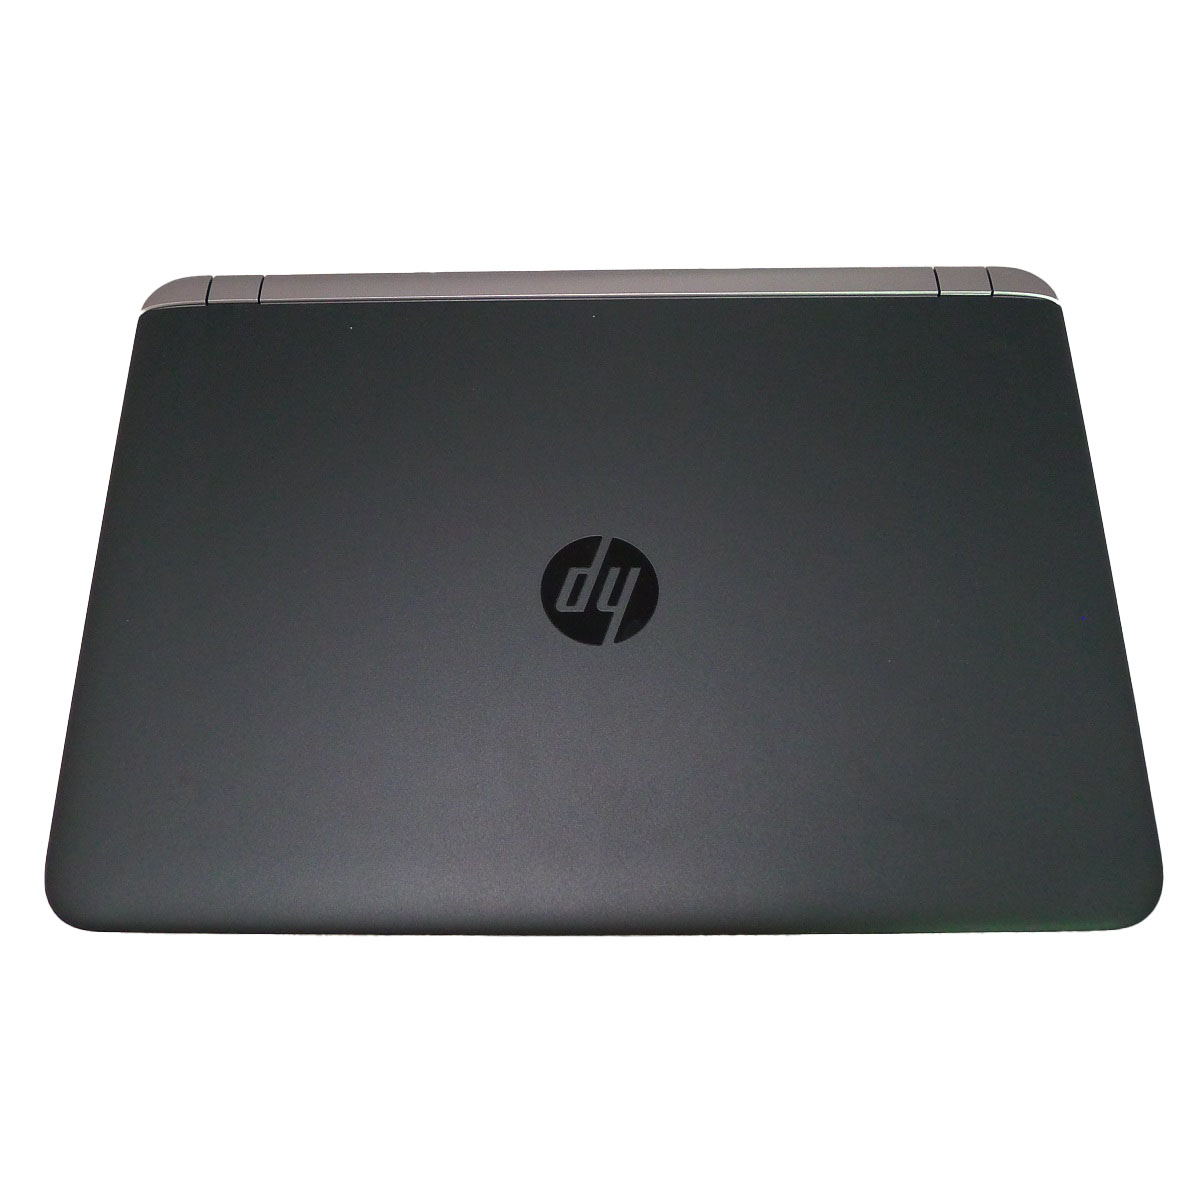 【楽天市場】HP ProBook 450 G3i3 4GB HDD250GB DVD-ROM 無線LAN Windows10